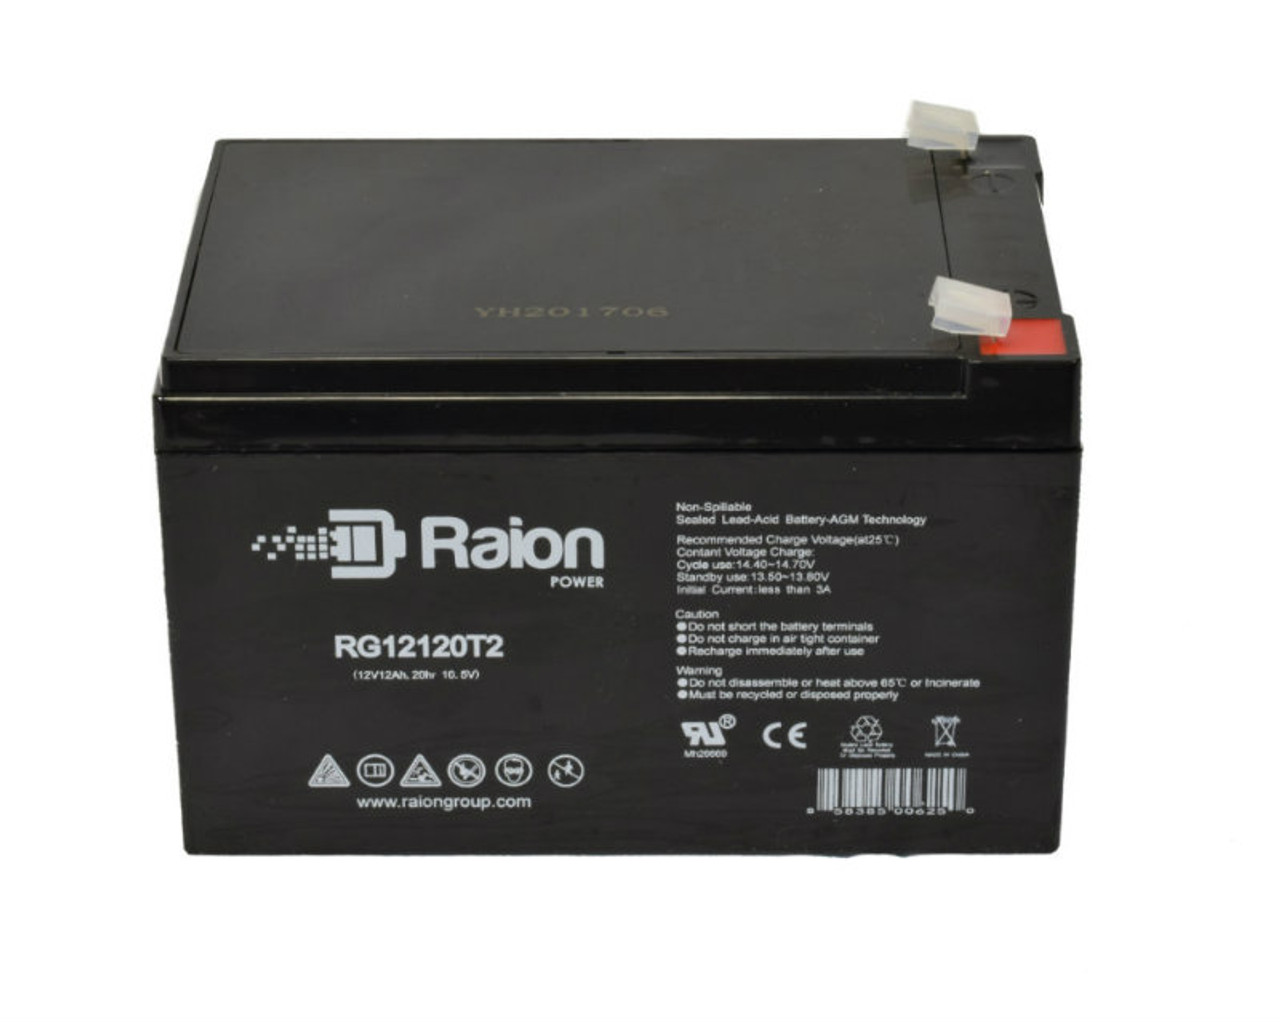 Raion Power RG12120T2 SLA Battery for Landport LP12-12